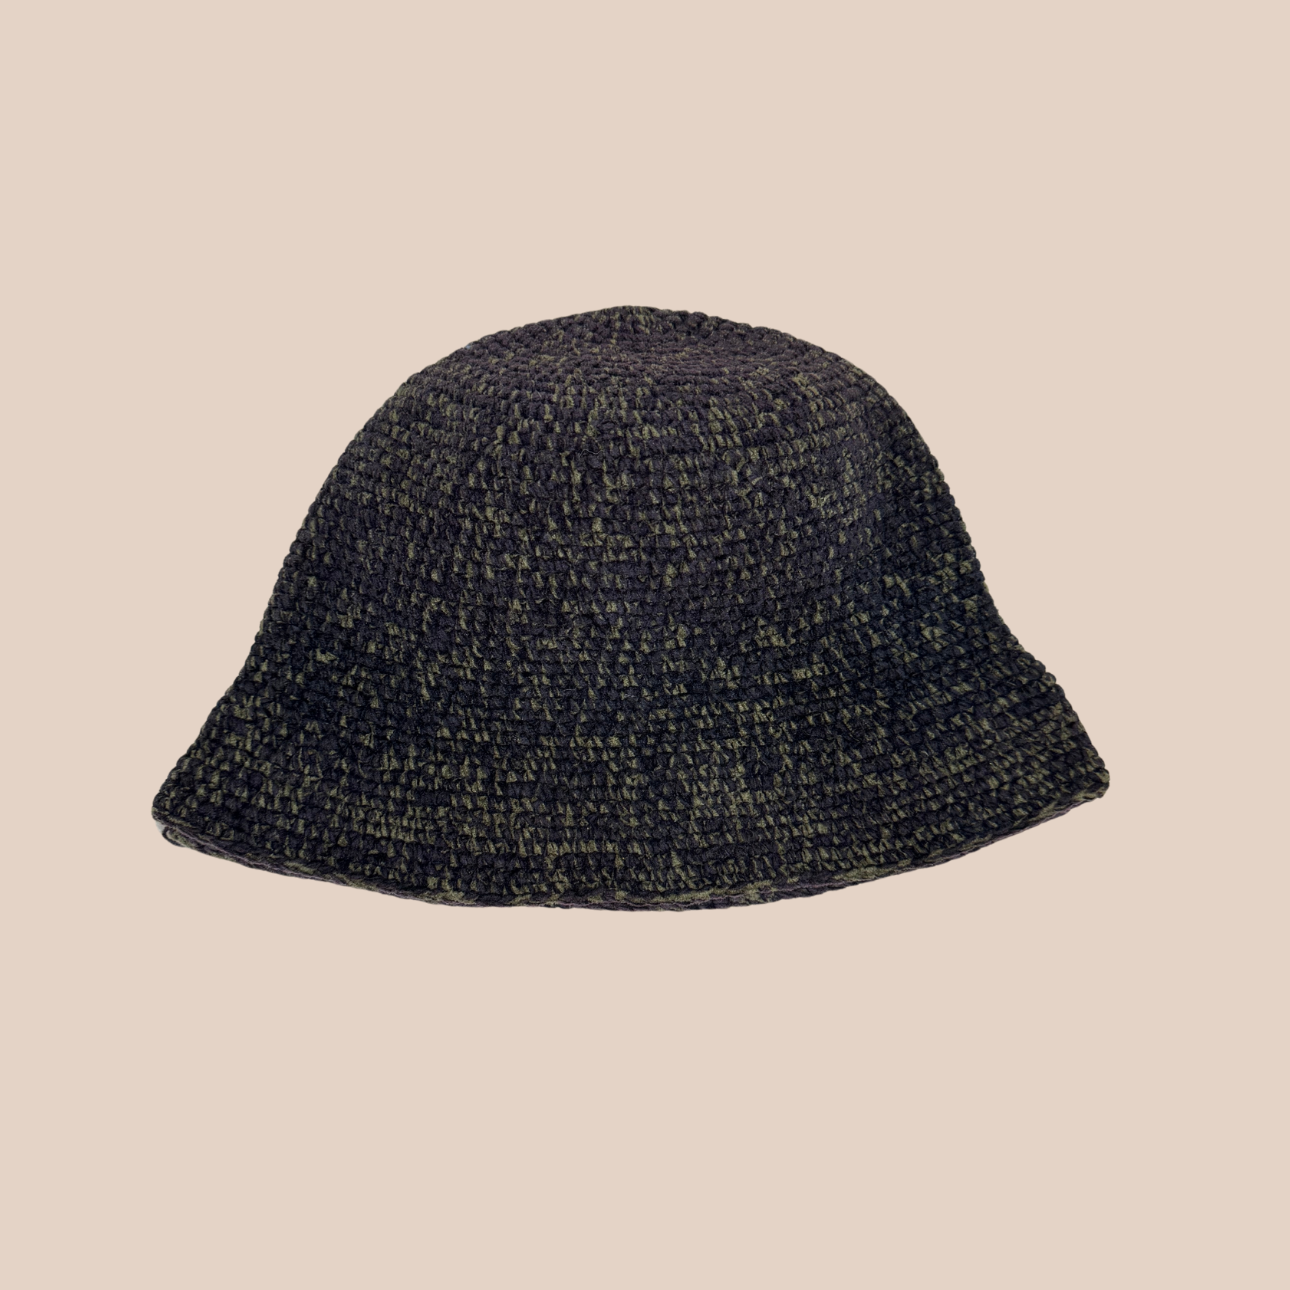 Un bucket hat crocheté en laine et acrylique, couleurs sombres